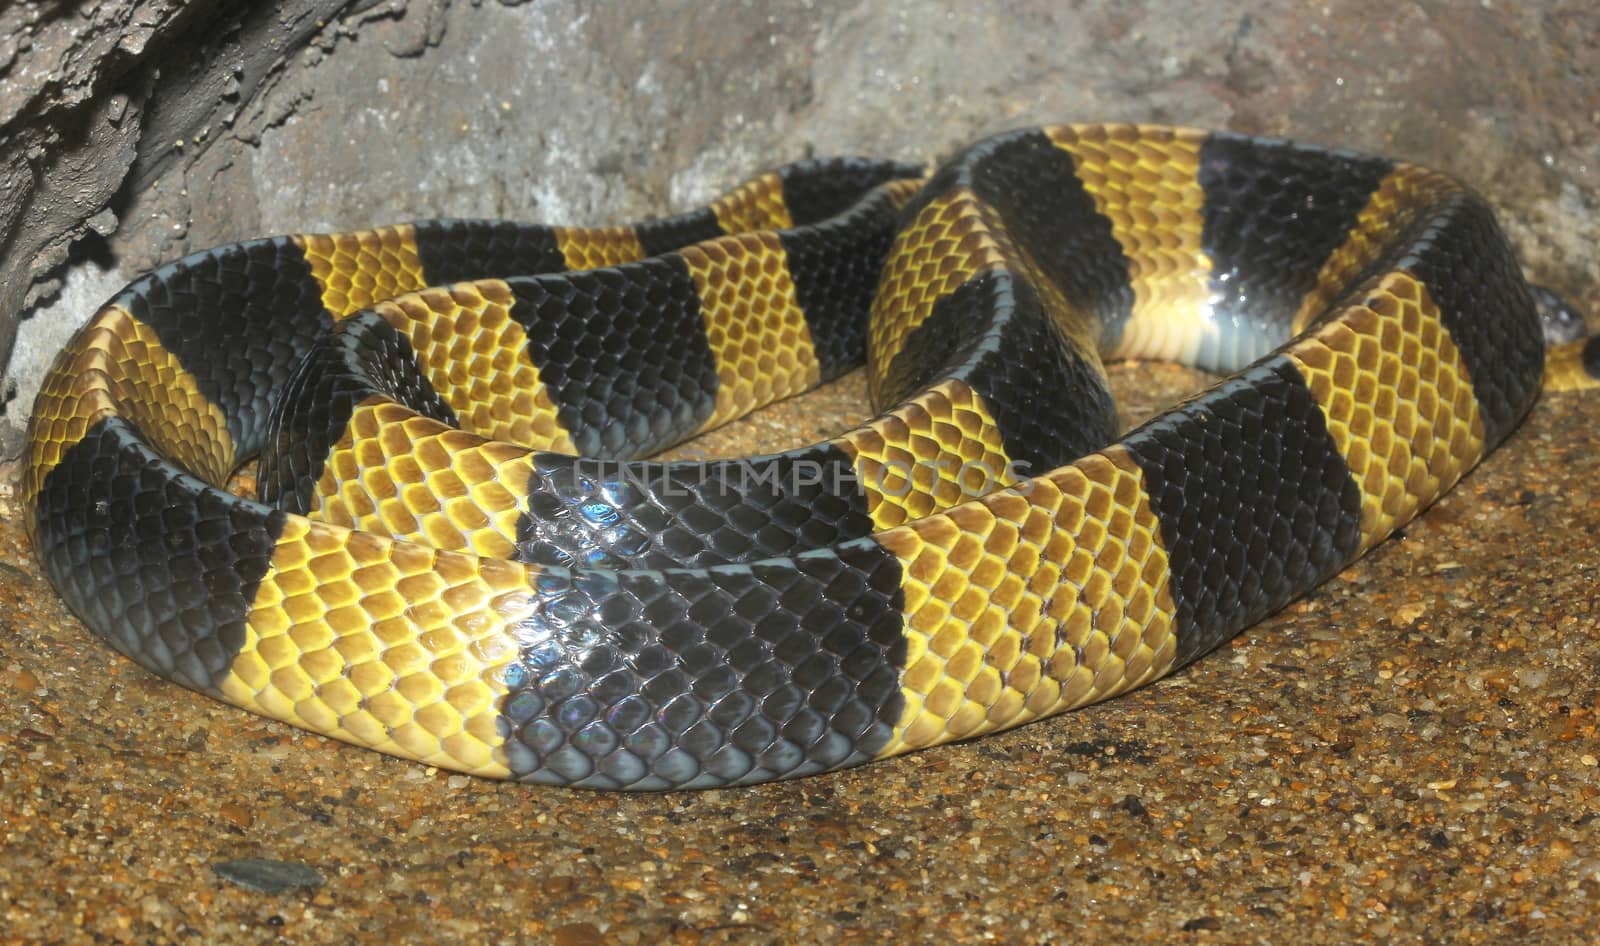 Krait snake skin in zoo thailand by pumppump